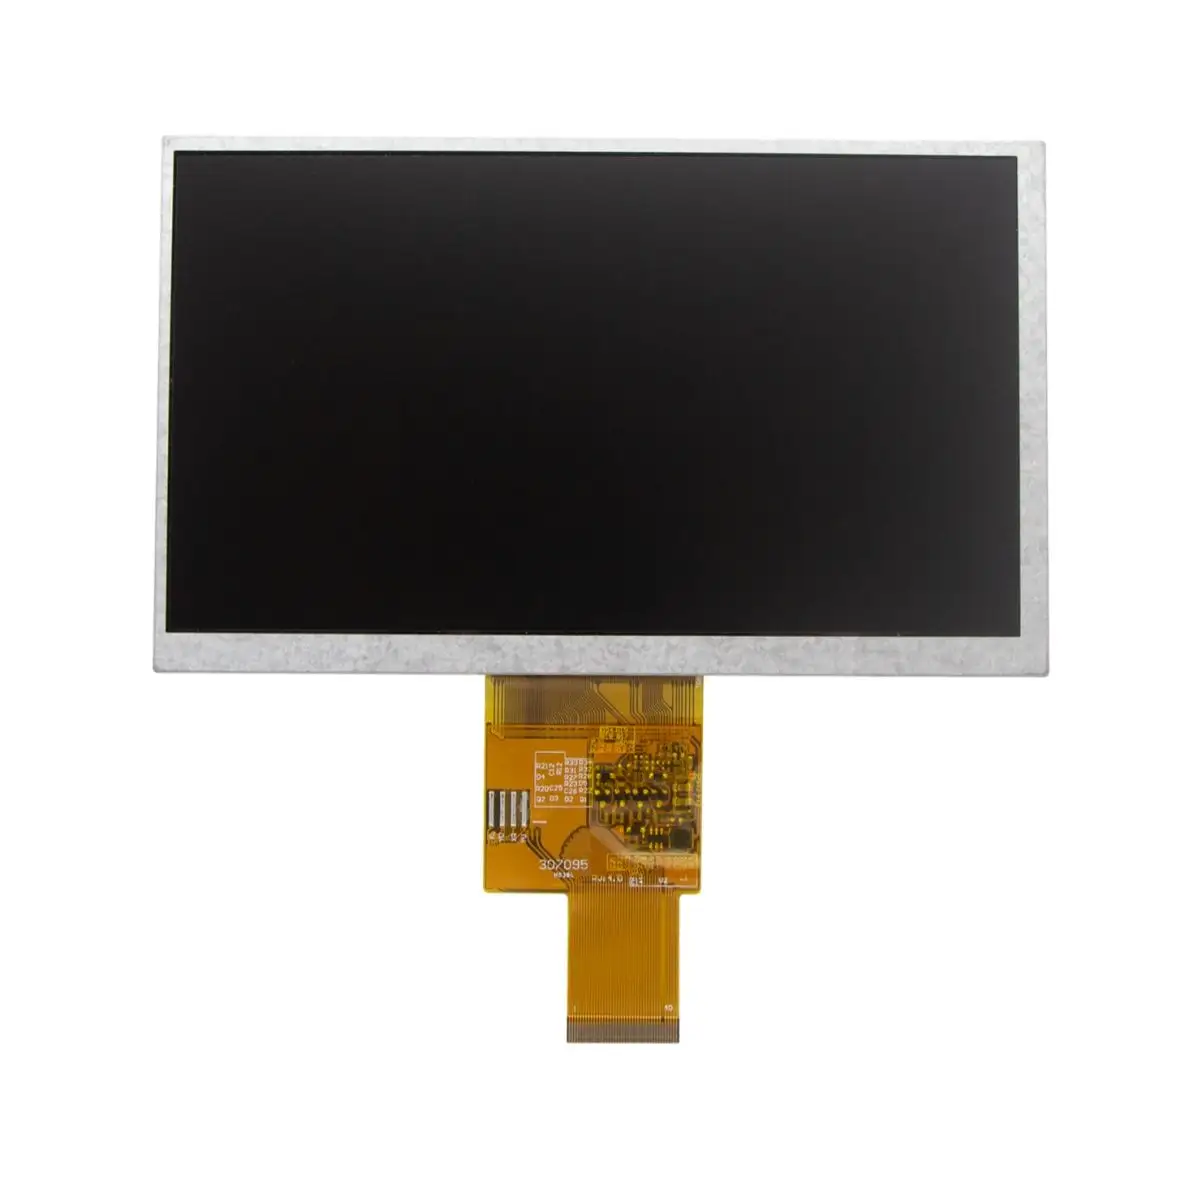 Vendi bene schermo lcd 7 pollici 800x480 RGB TTL 50pin leggibile alla luce del sole 500nits 1000nits modulo display lcd per auto gps LCD